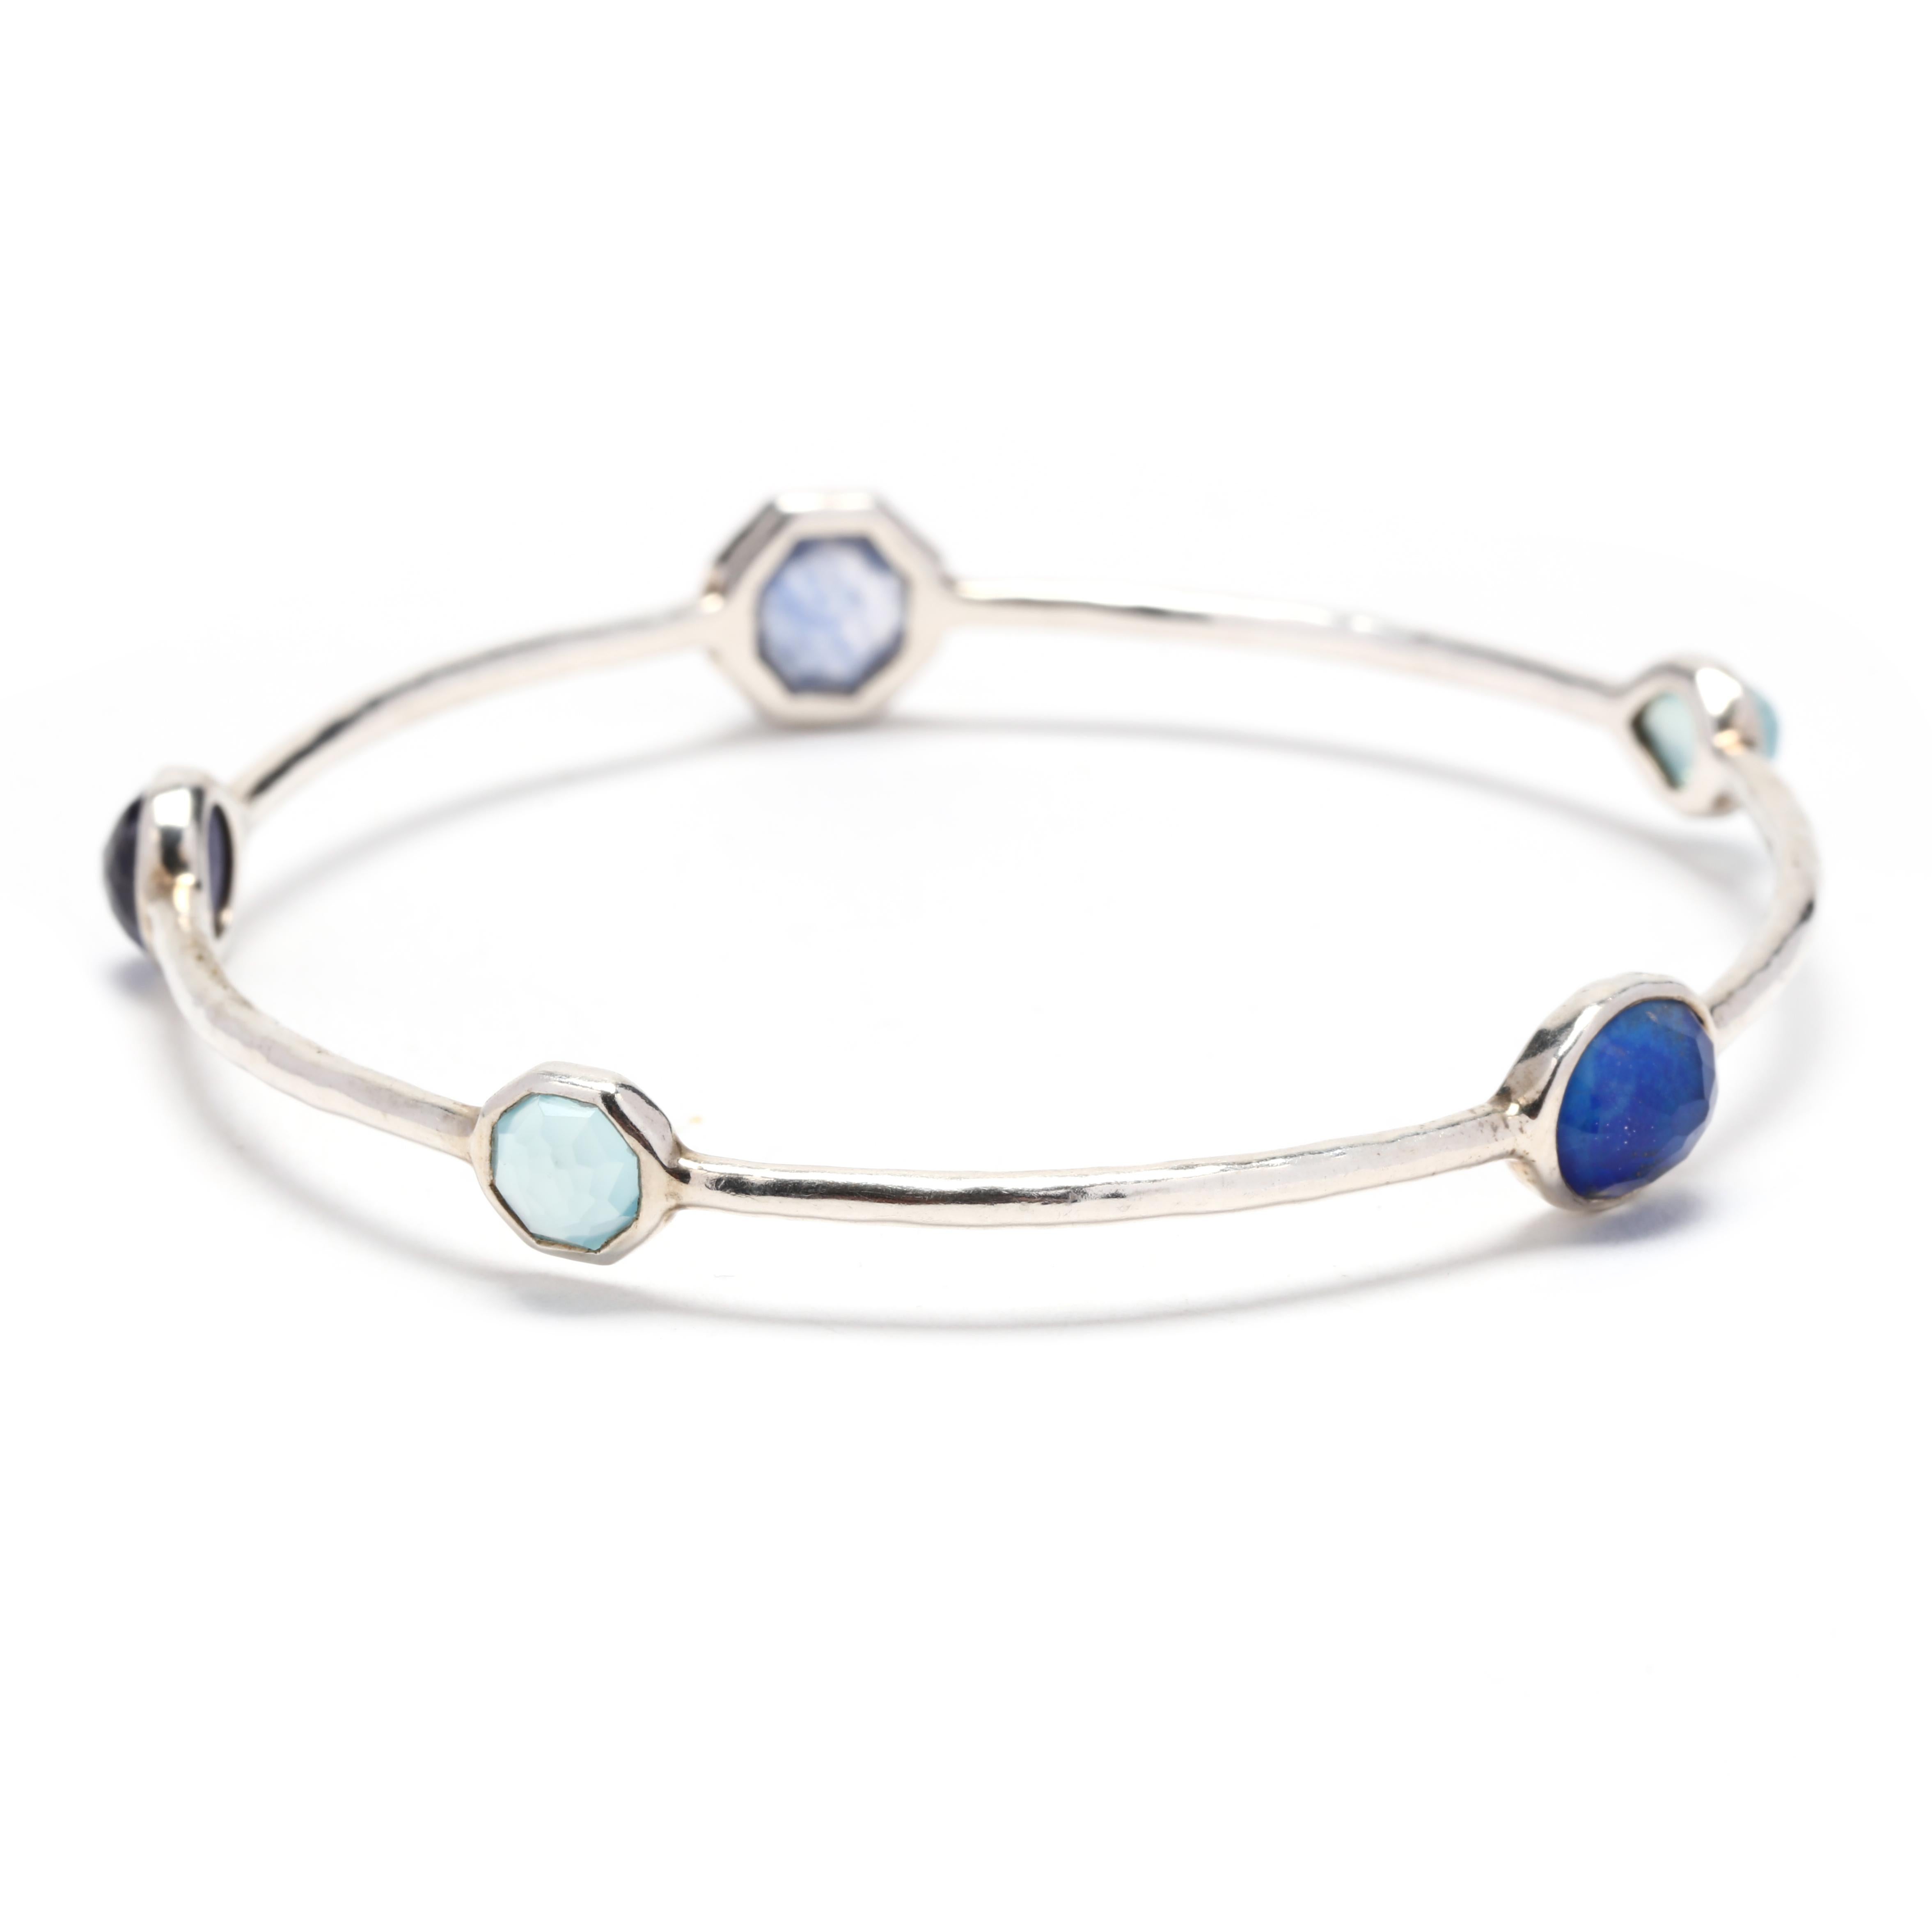 Dieses Ippolita Rock Candy Blue 5 Stone Bangle Bracelet ist ein atemberaubendes Schmuckstück, das mit Sicherheit ein Statement setzt. Dieses Armband aus hochwertigem Sterlingsilber ist mit fünf wunderschönen blauen Edelsteinen besetzt, die das Licht